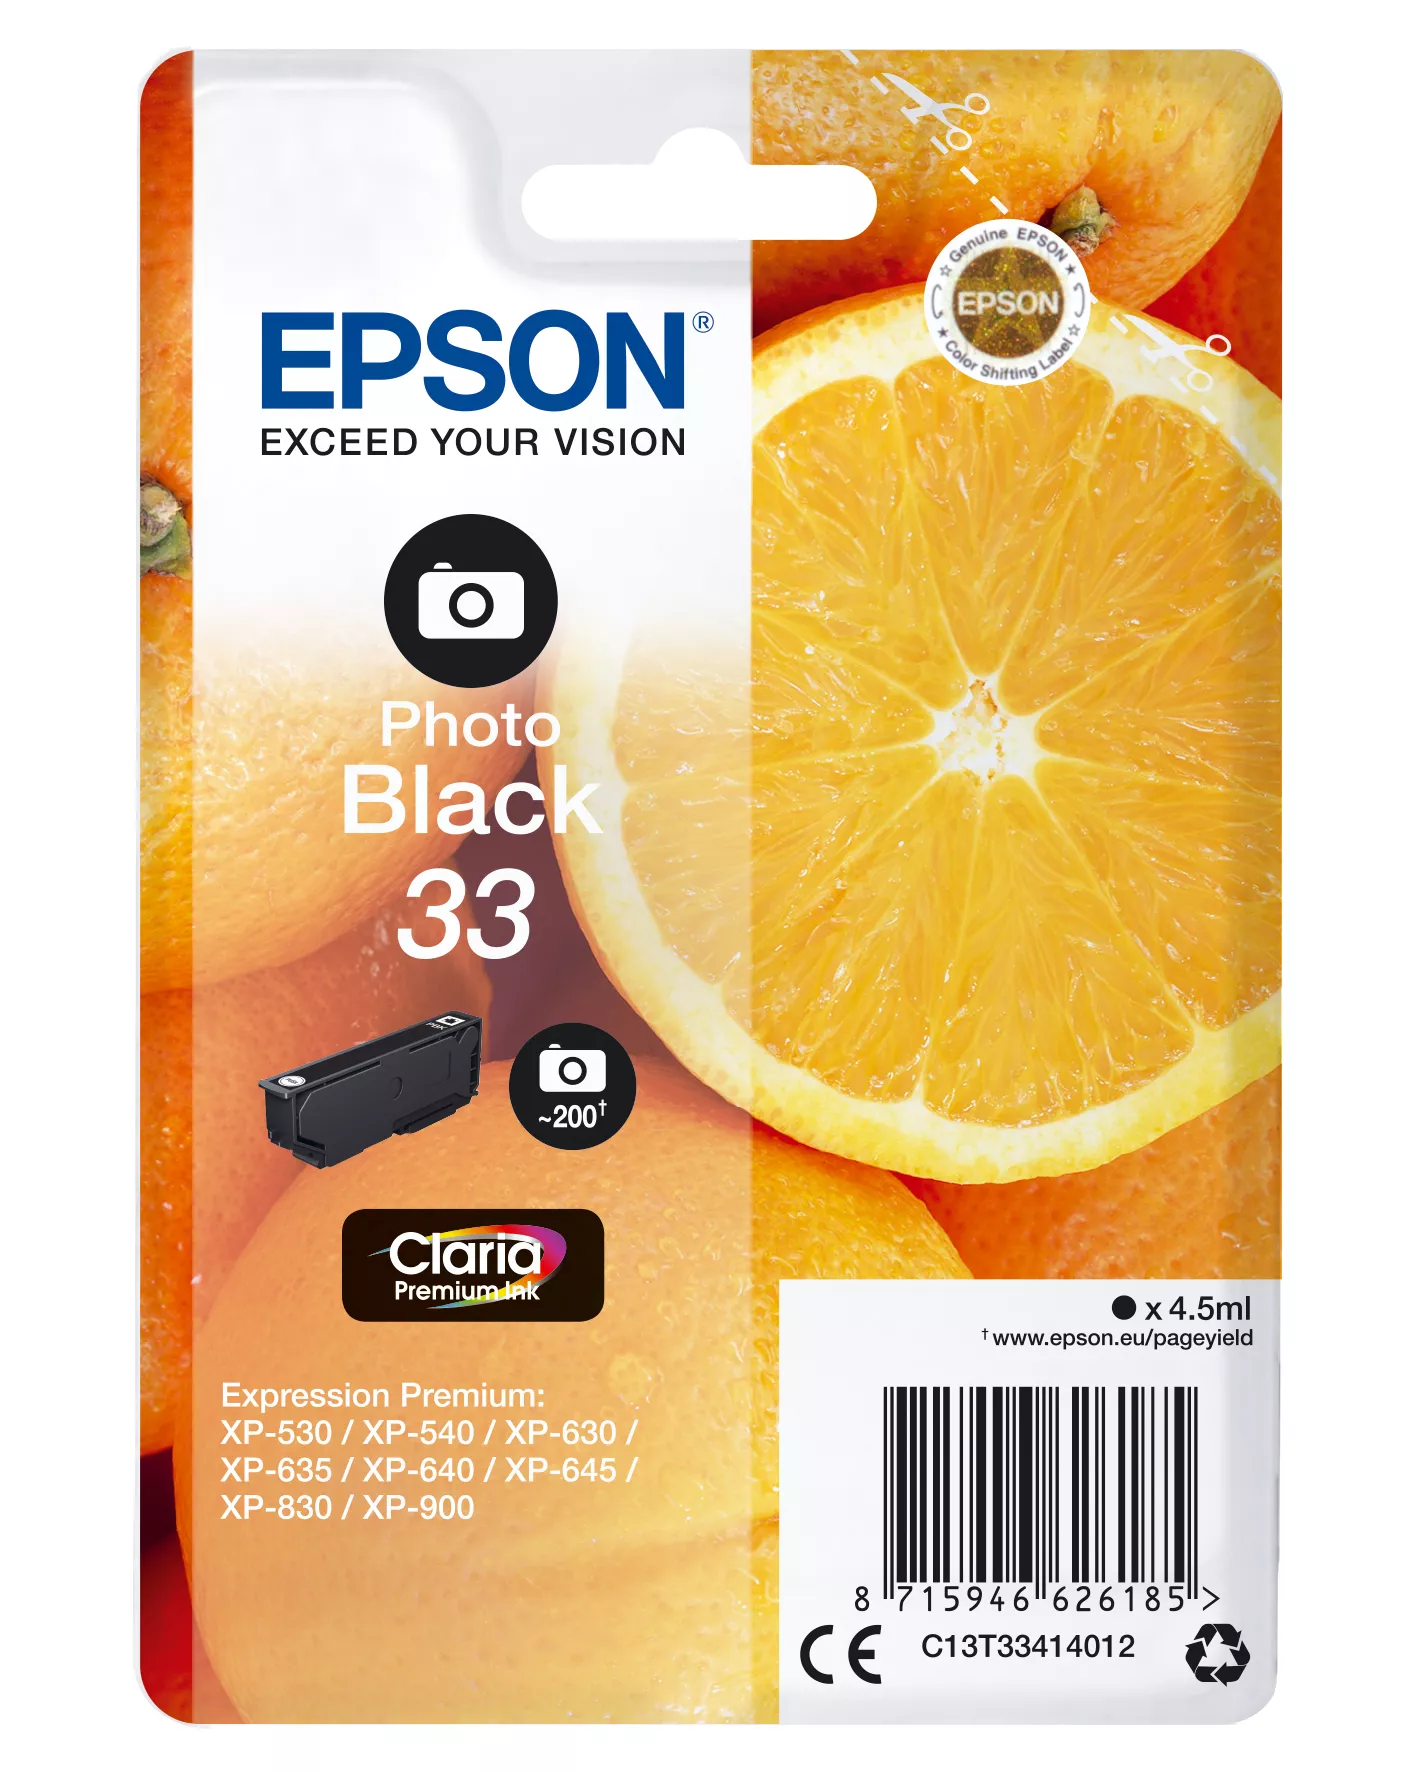 Vente EPSON Cartouche Oranges Encre Claria Premium Noir Photo au meilleur prix